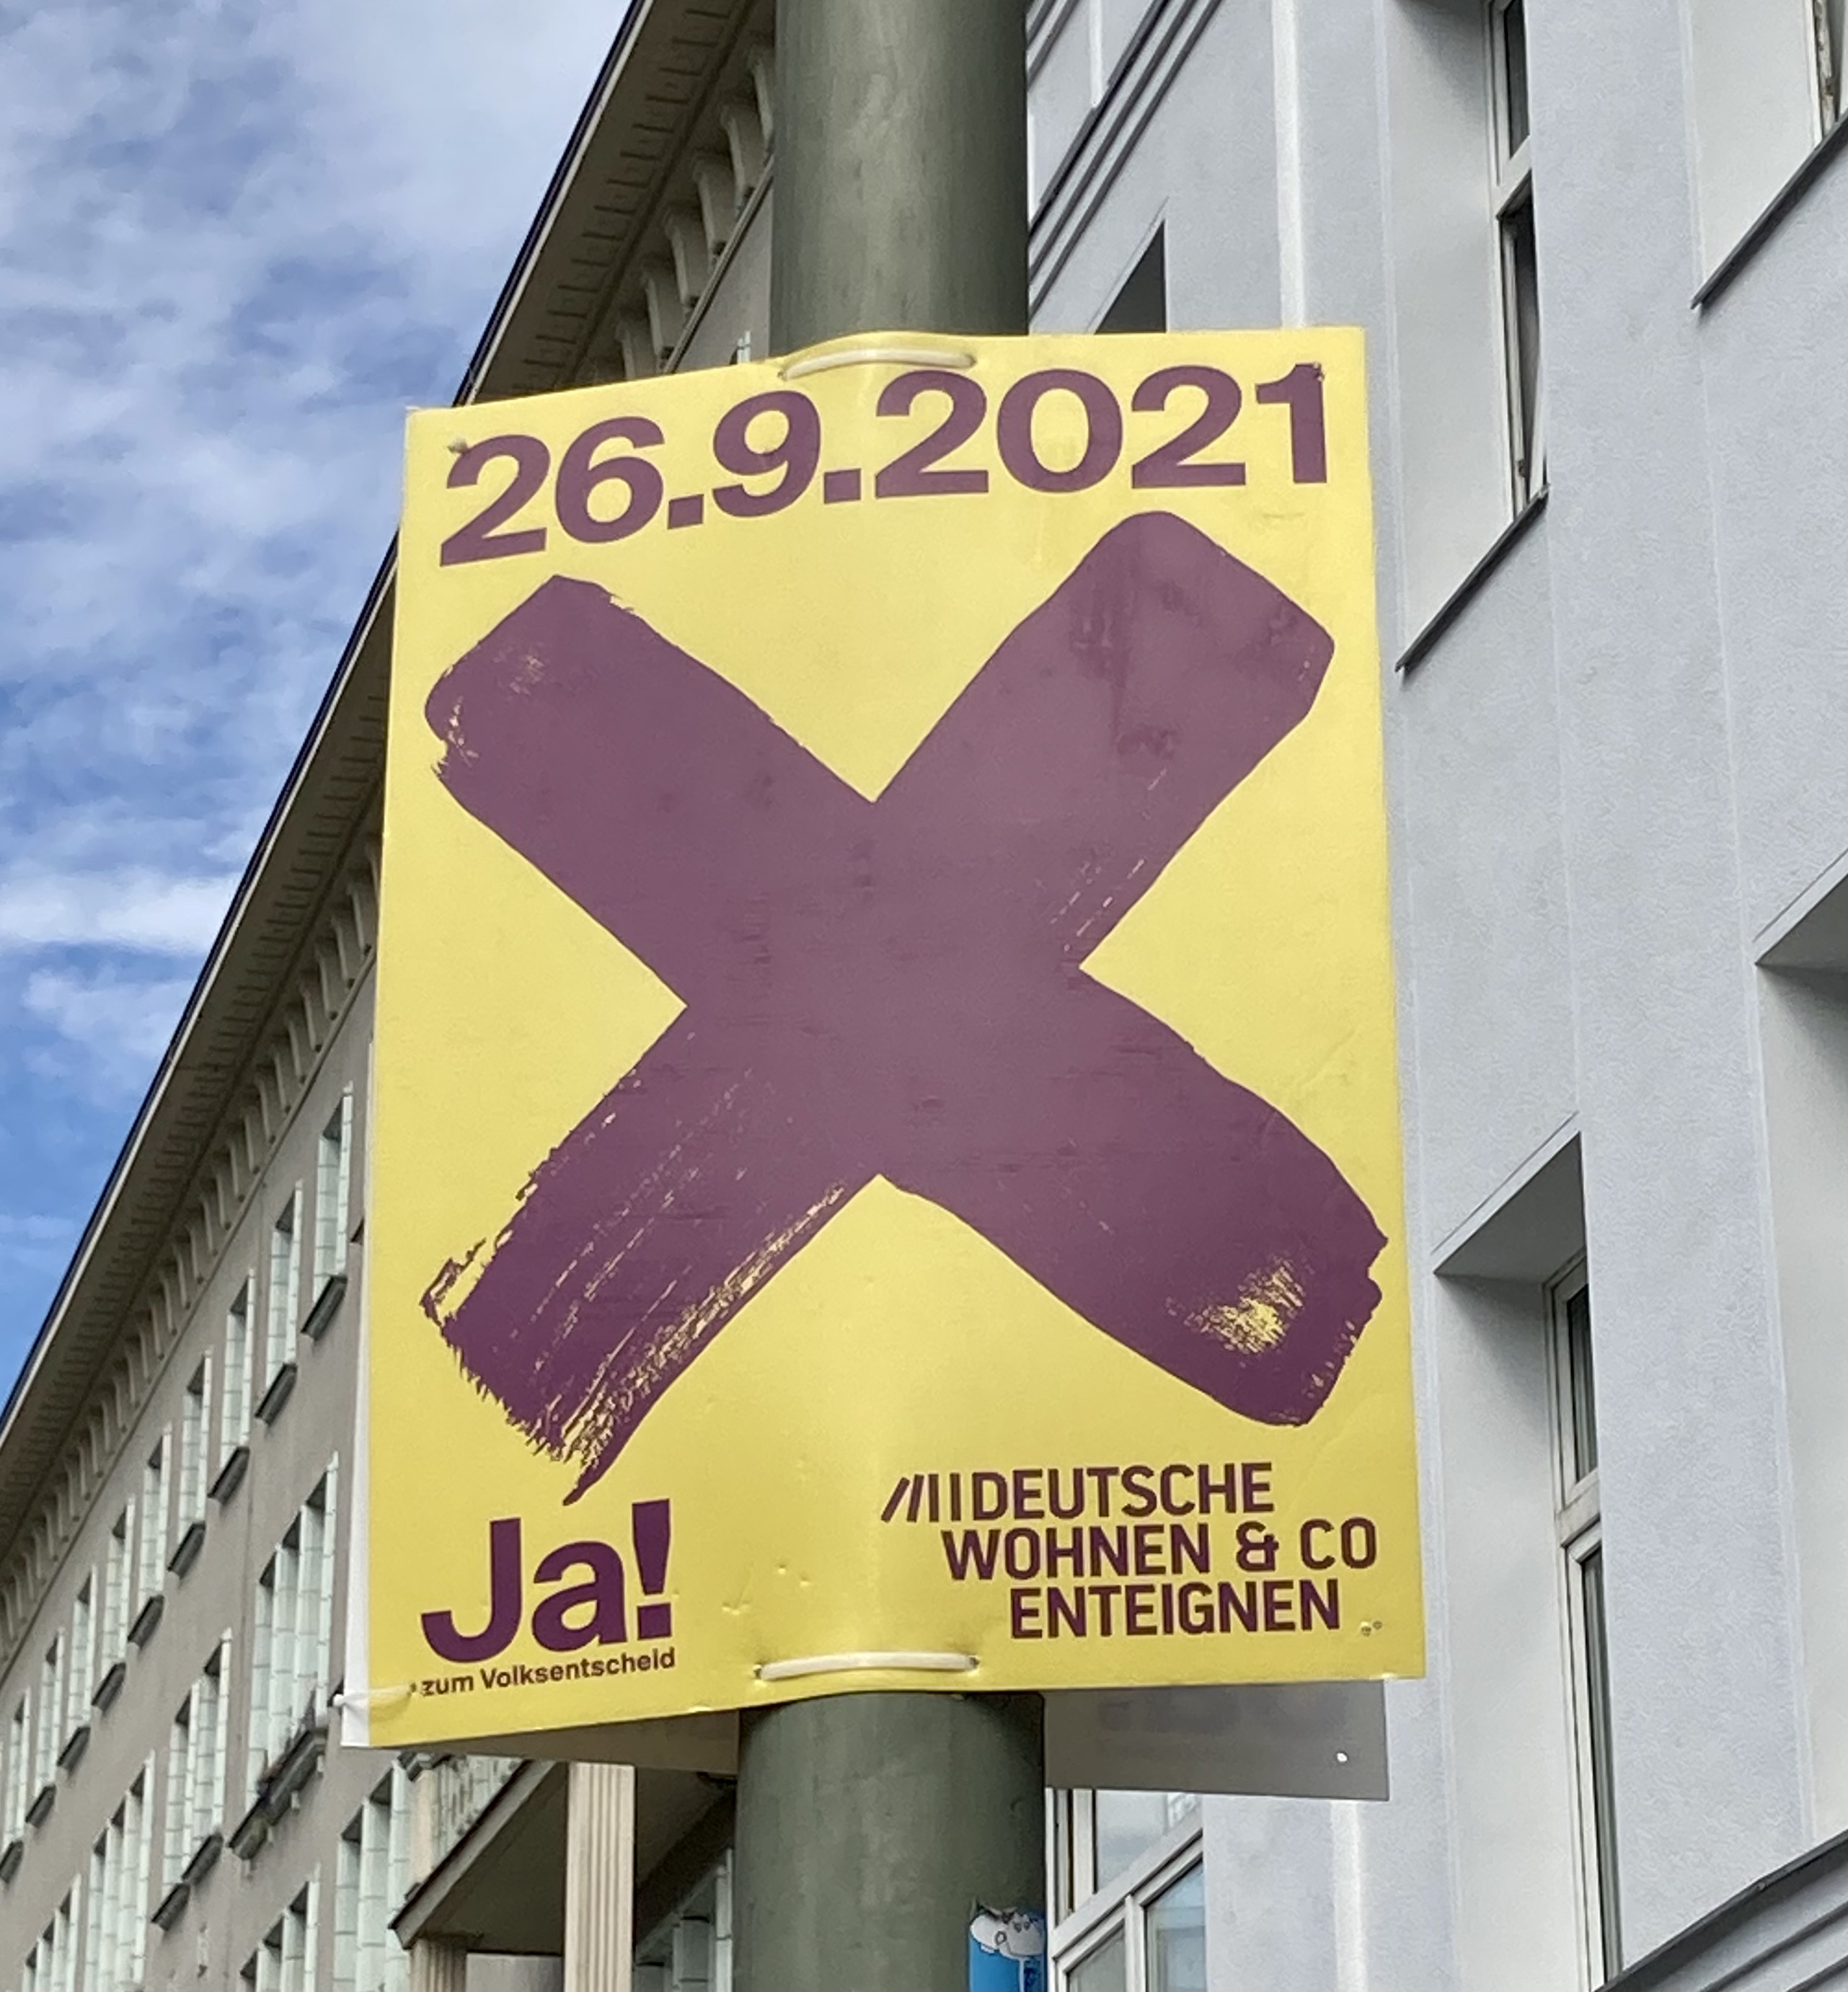 Datei:Campaign poster for the Deutsche Wohnen & Co. enteignen poster.jpg –  Wikipedia